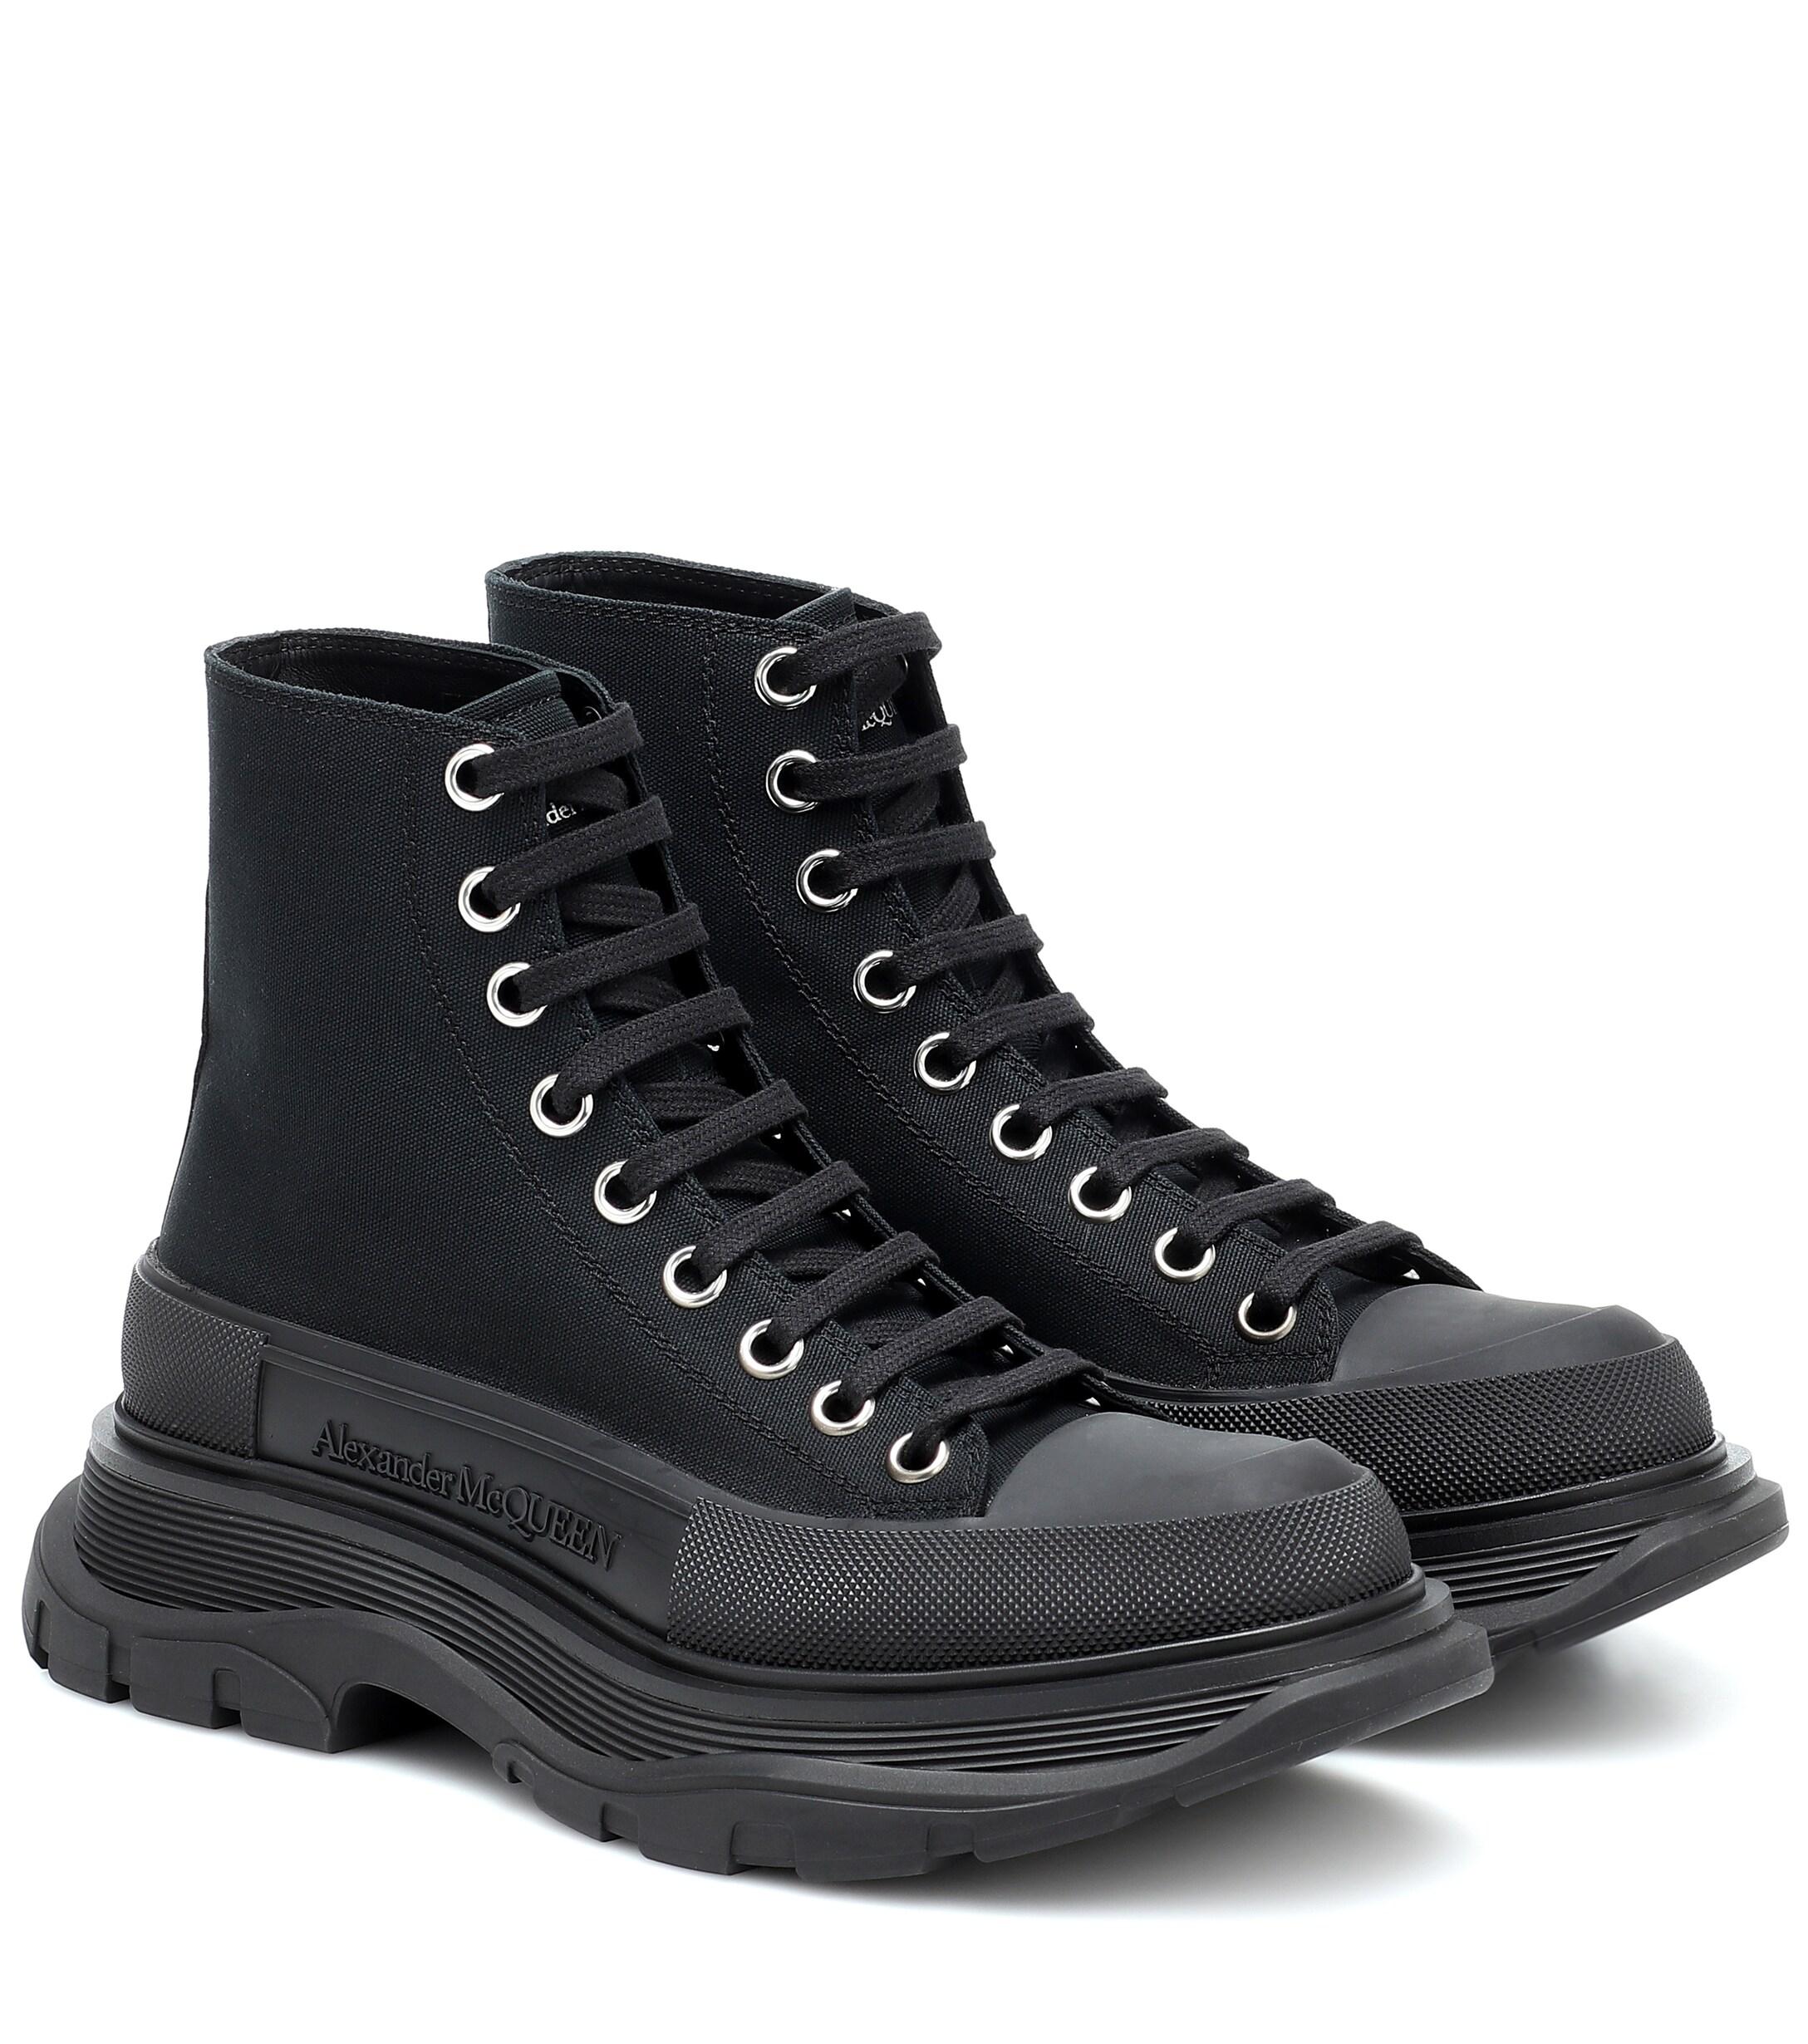 Alexander McQueen Tread Slick Canvas Sneakers in Black - Lyst